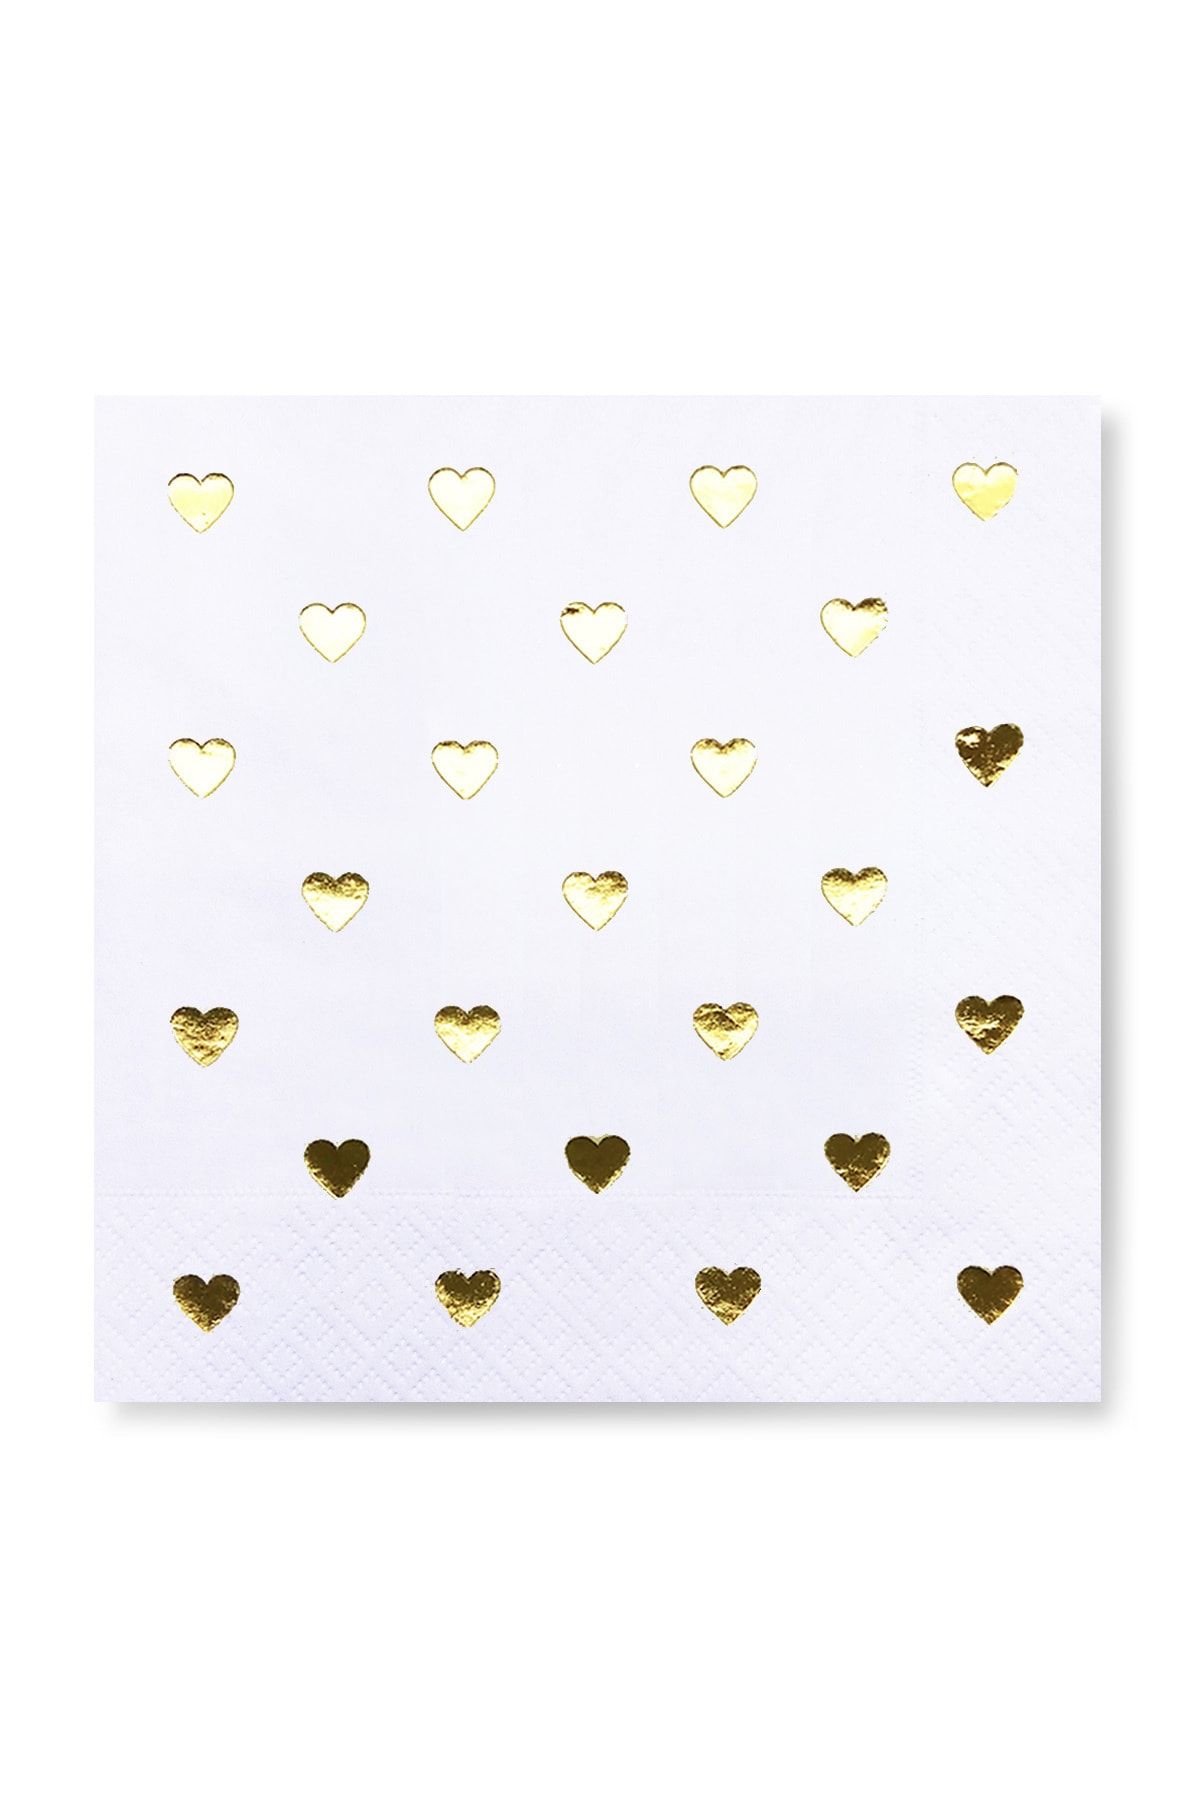 Story Altın Varak Kalpli Desenli 16'lı Beyaz Renkli Peçete